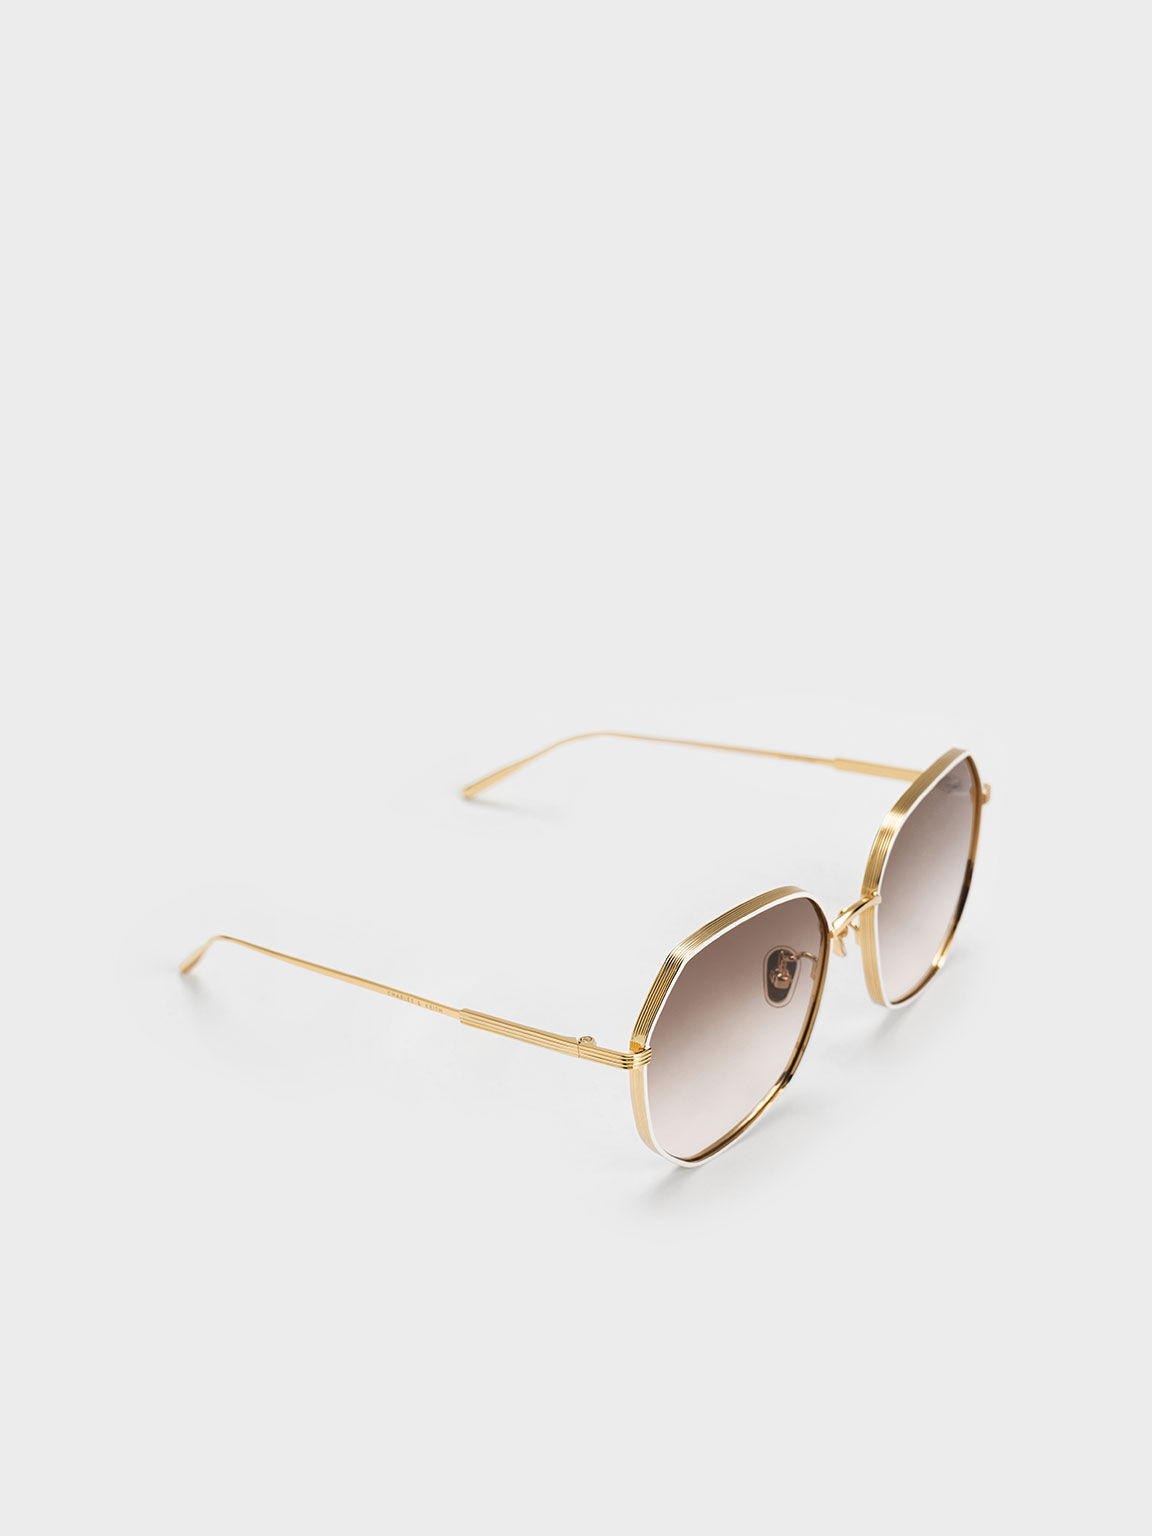 Tinted Geometric Sunglasses, Cream, hi-res